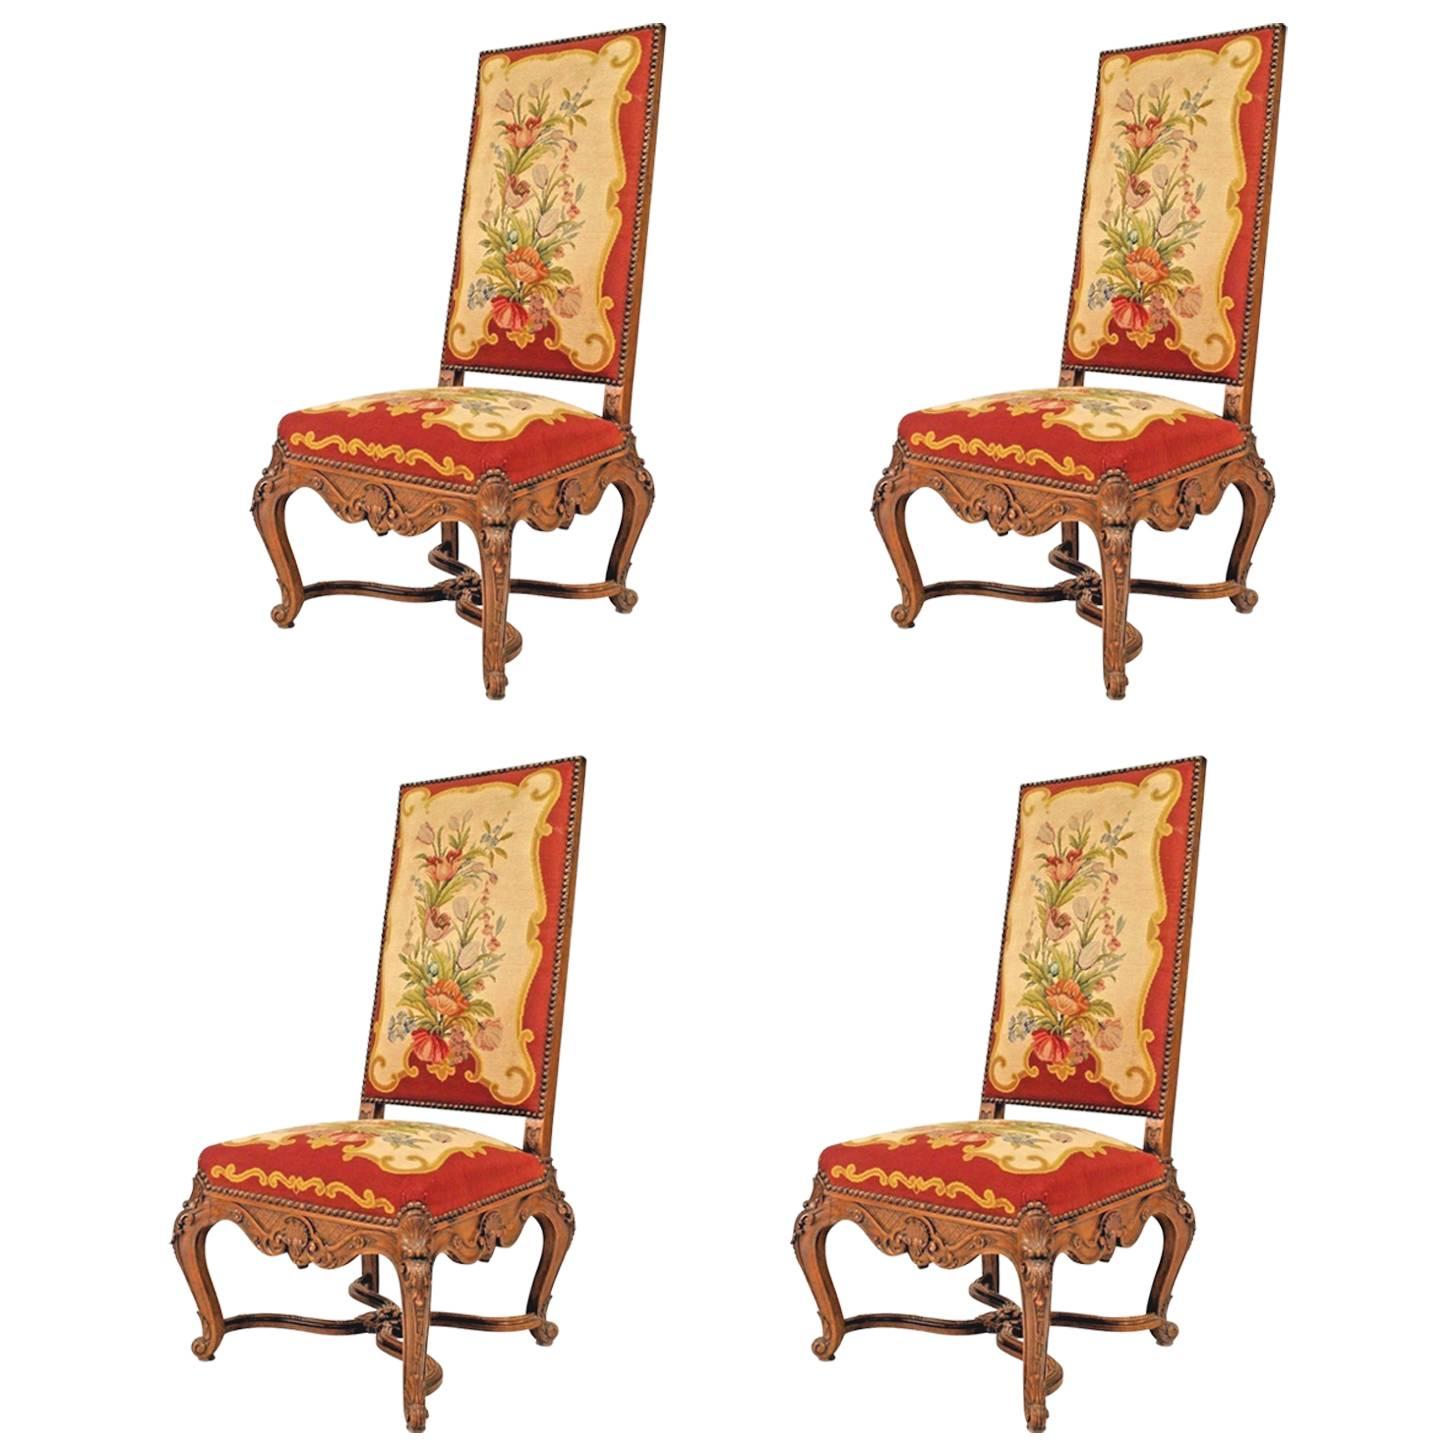 Satz von 4 roten, geblümten Aubusson-Beistellstühlen im französischen Regence-Stil